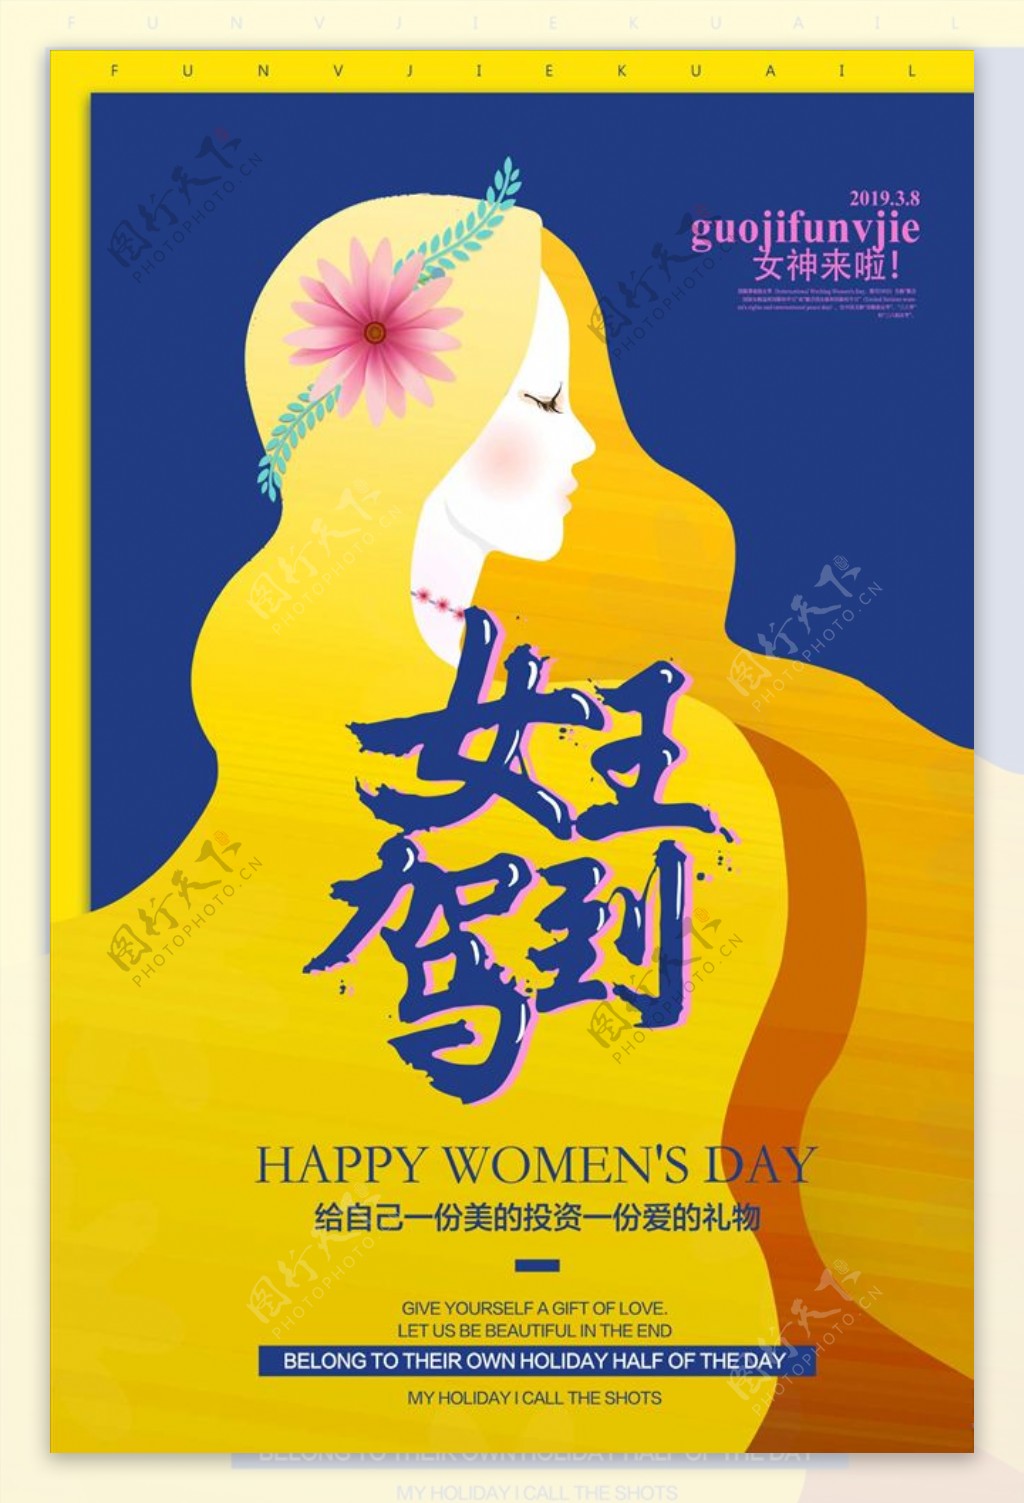 38妇女节女人节促销海报设计